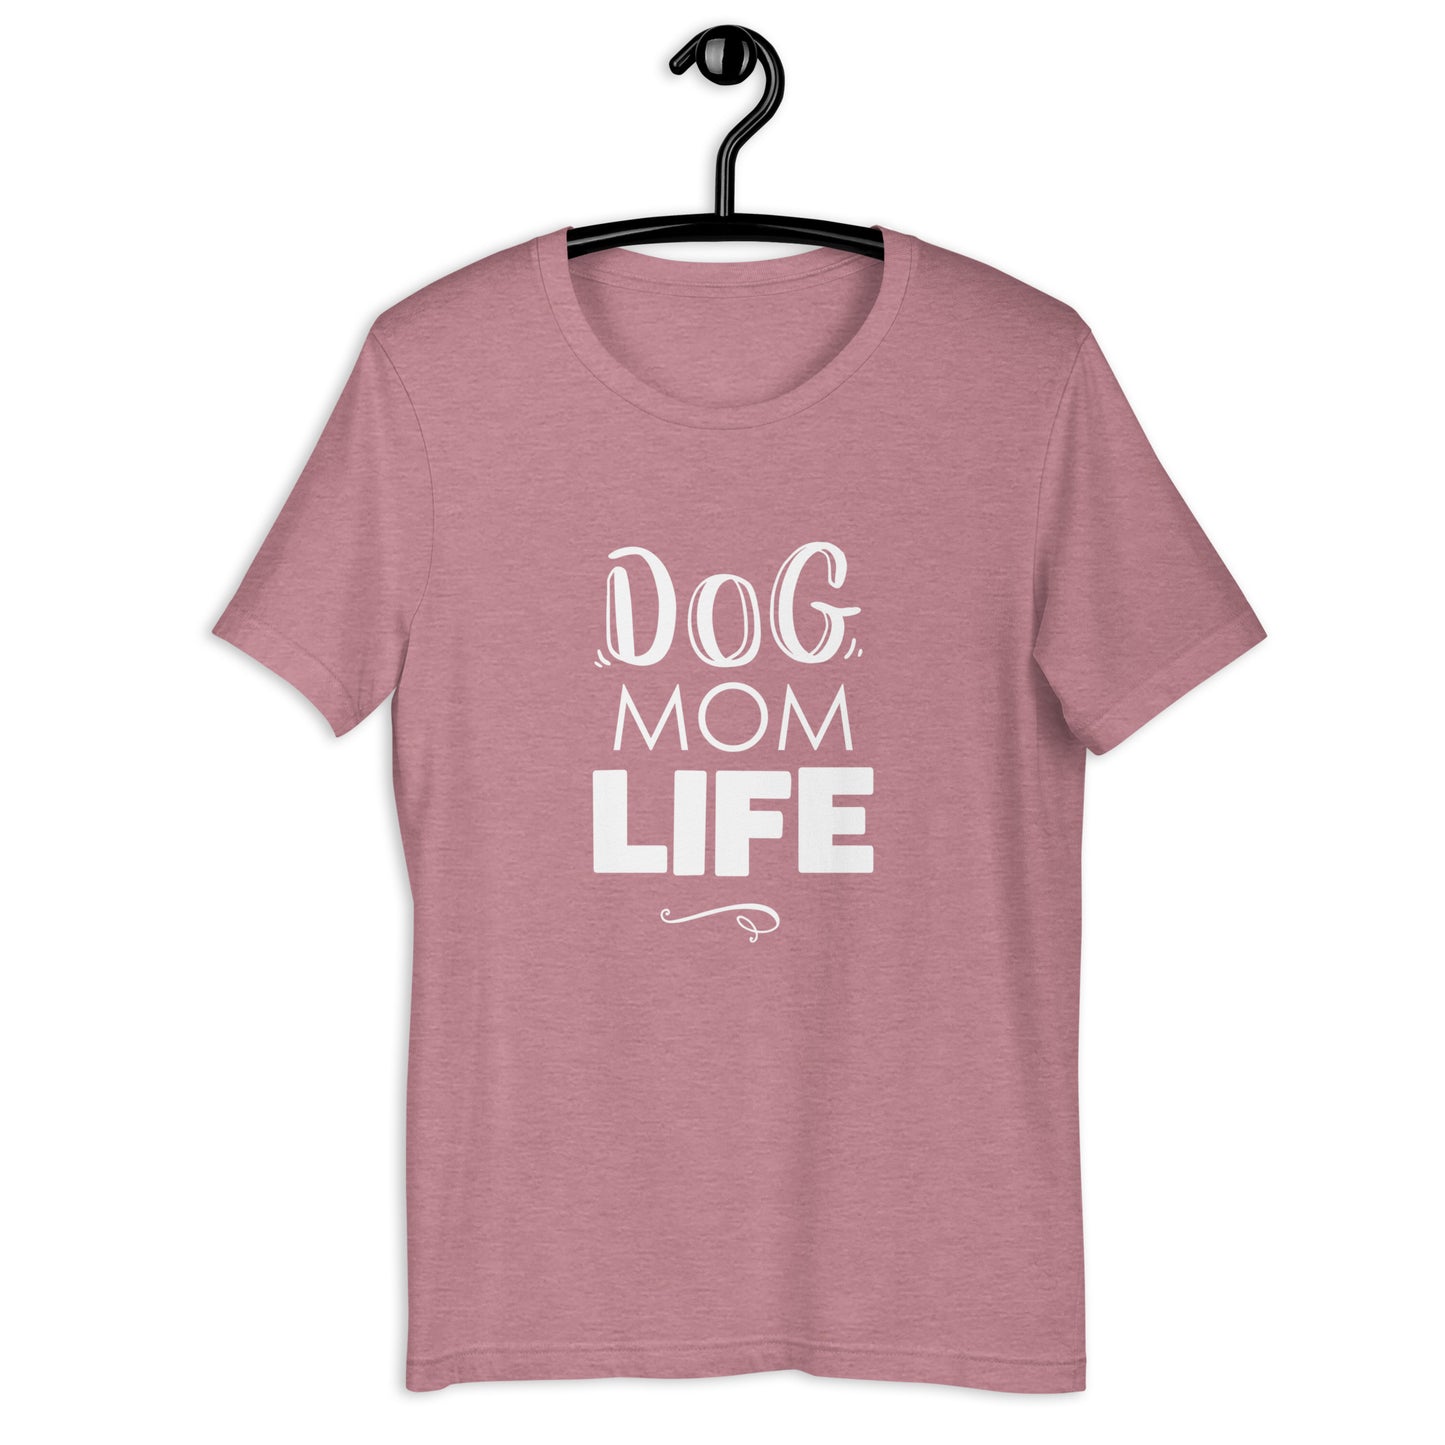 DOG MOM LIFE - Unisex t-shirt